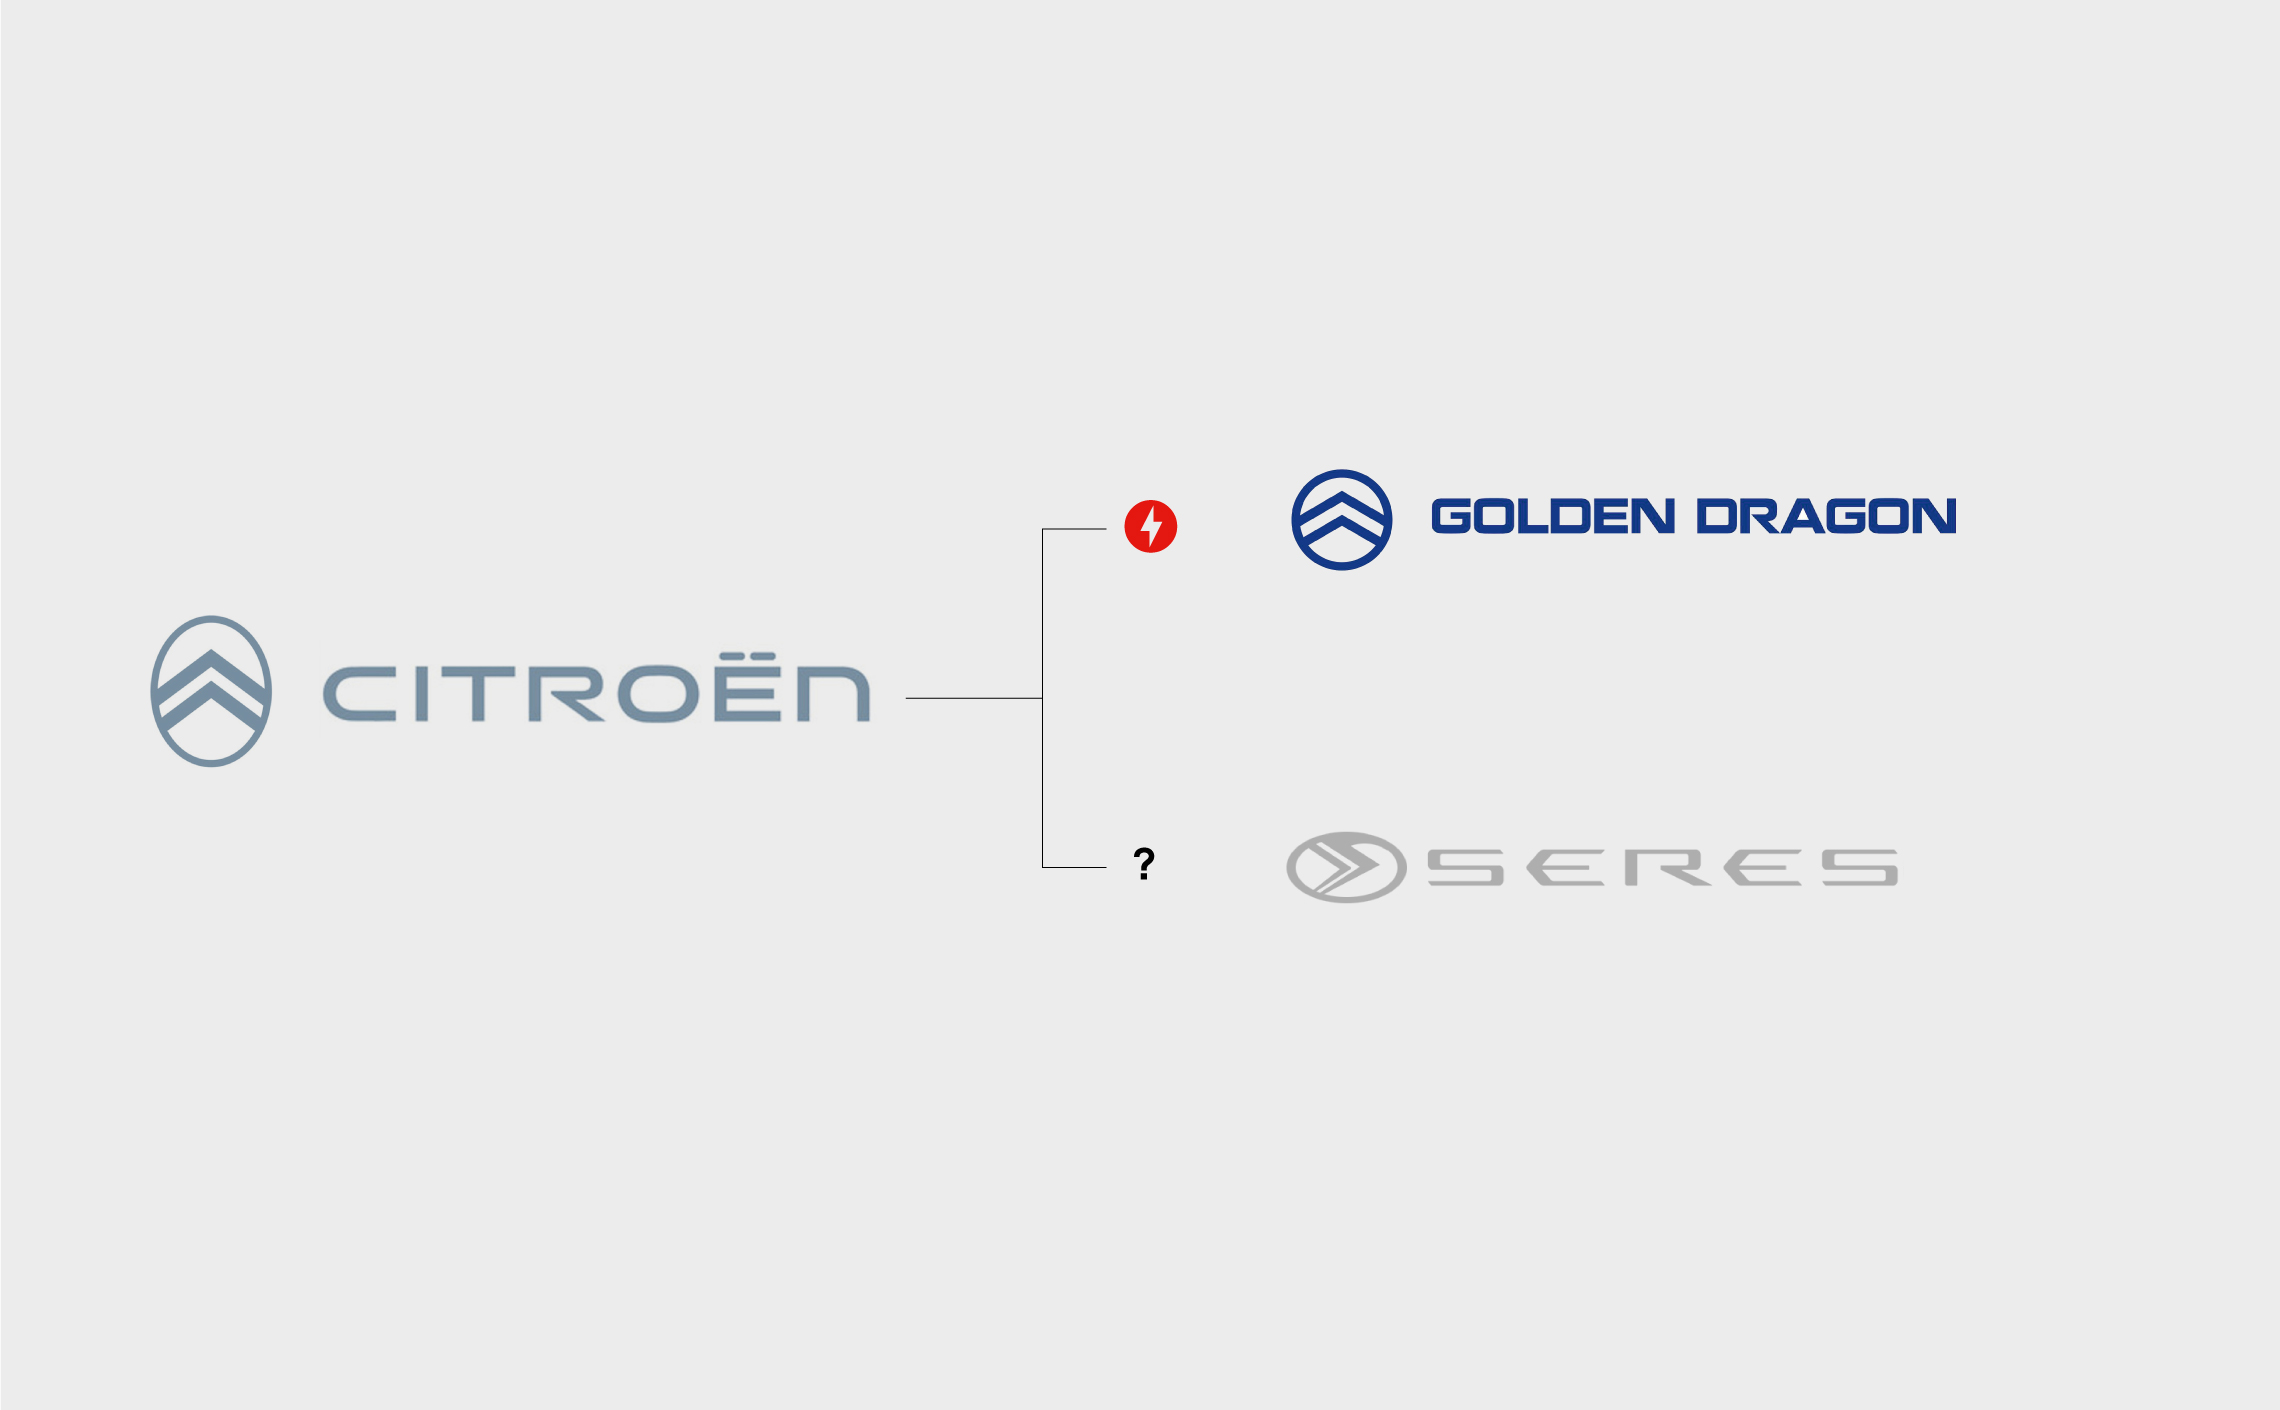 Creads décrypte pour vous le nouveau logo de Citroën !